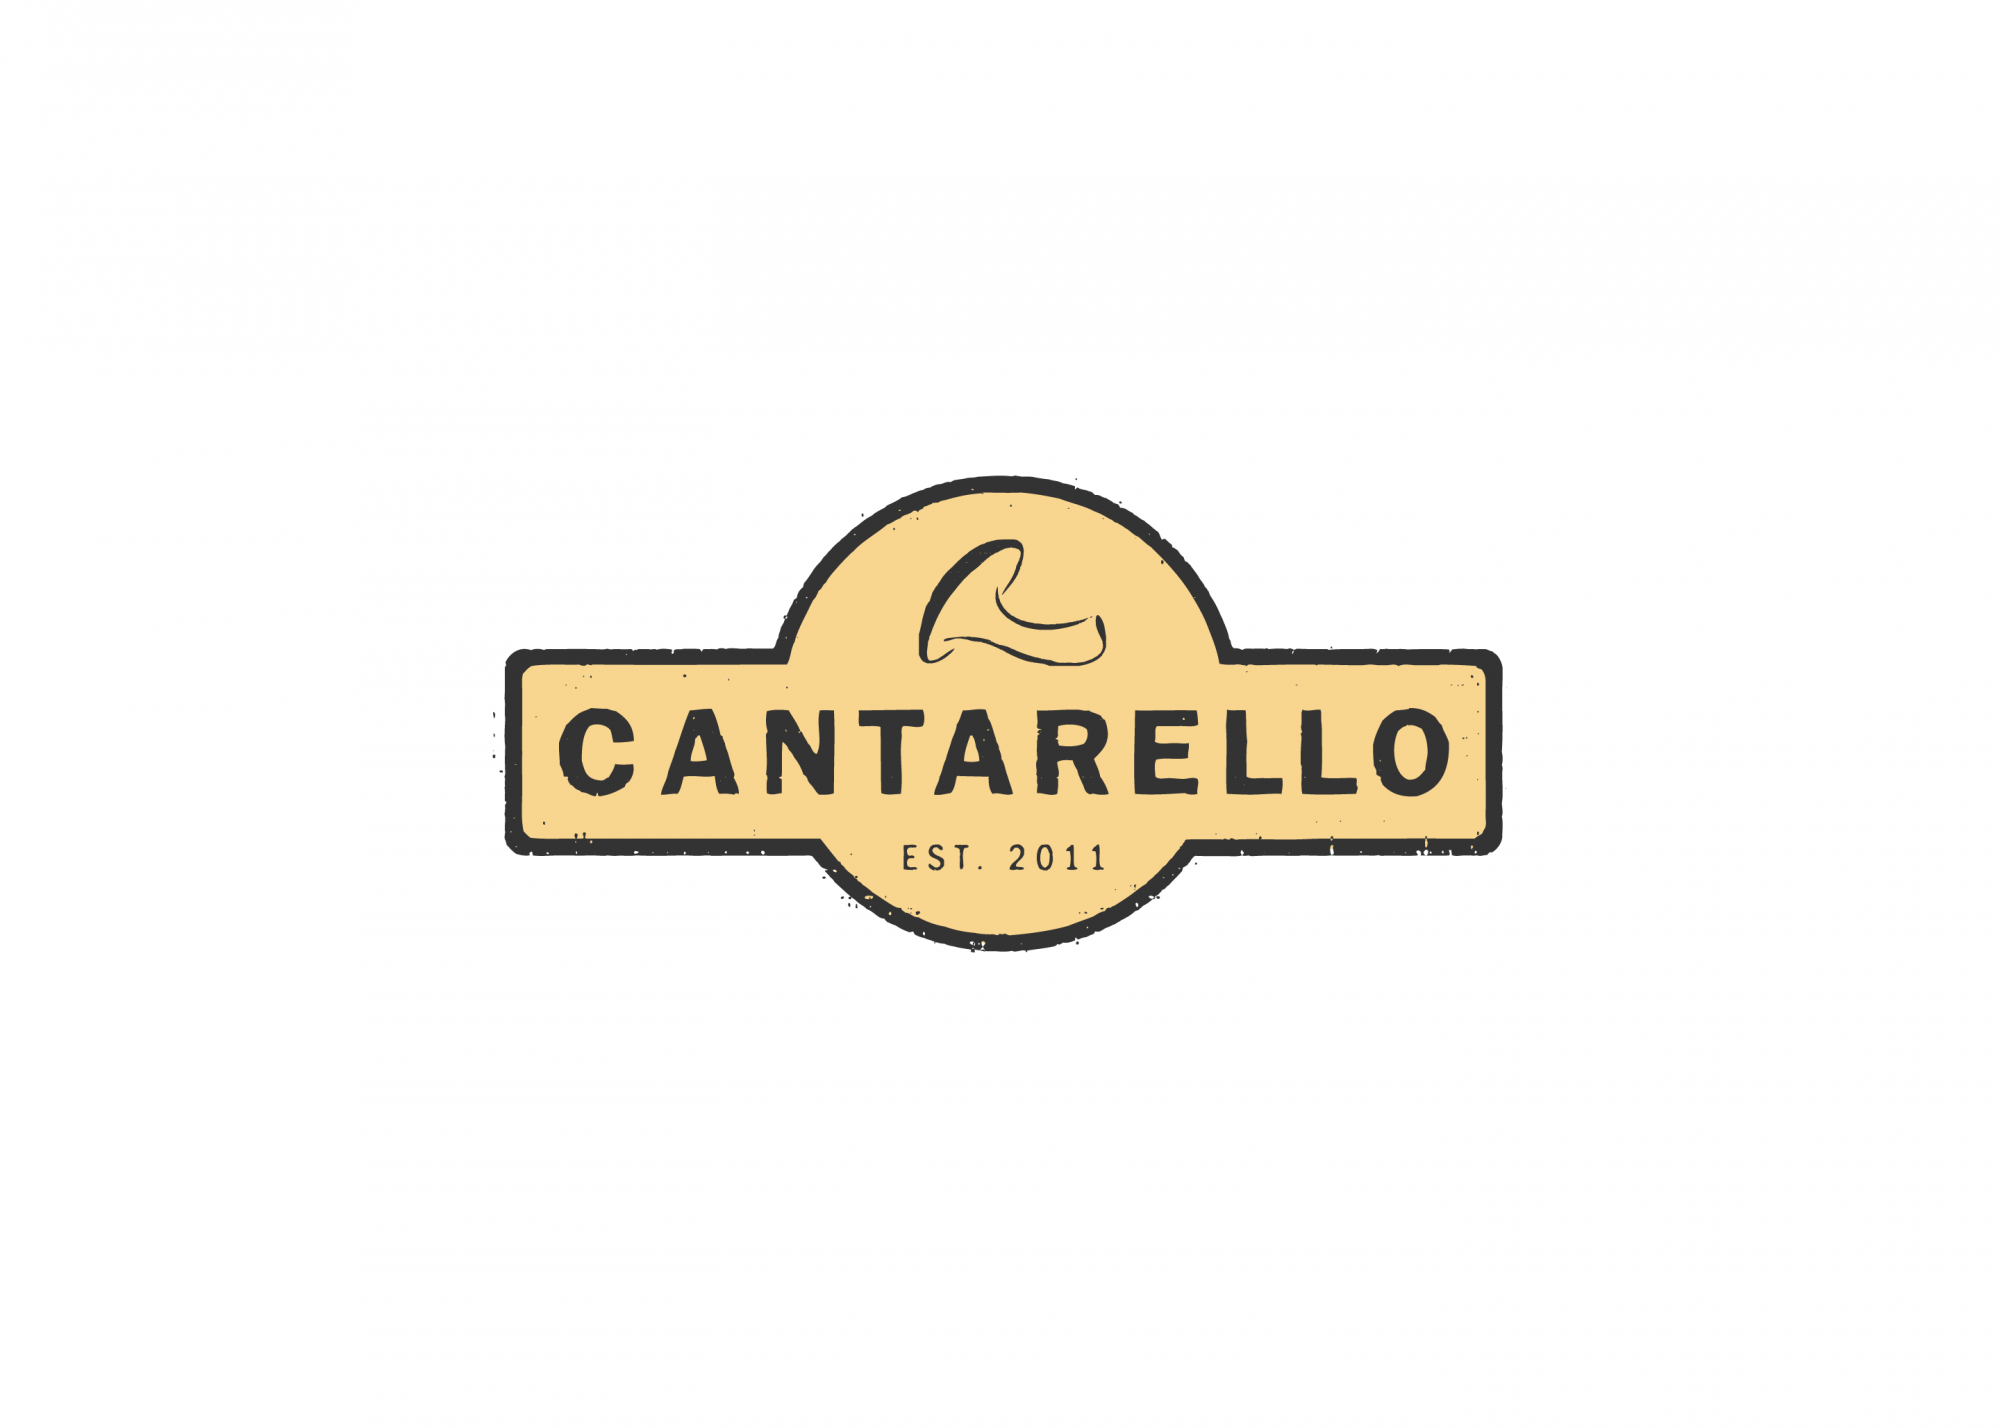 Cantarello logo design by Ryan Paonessa